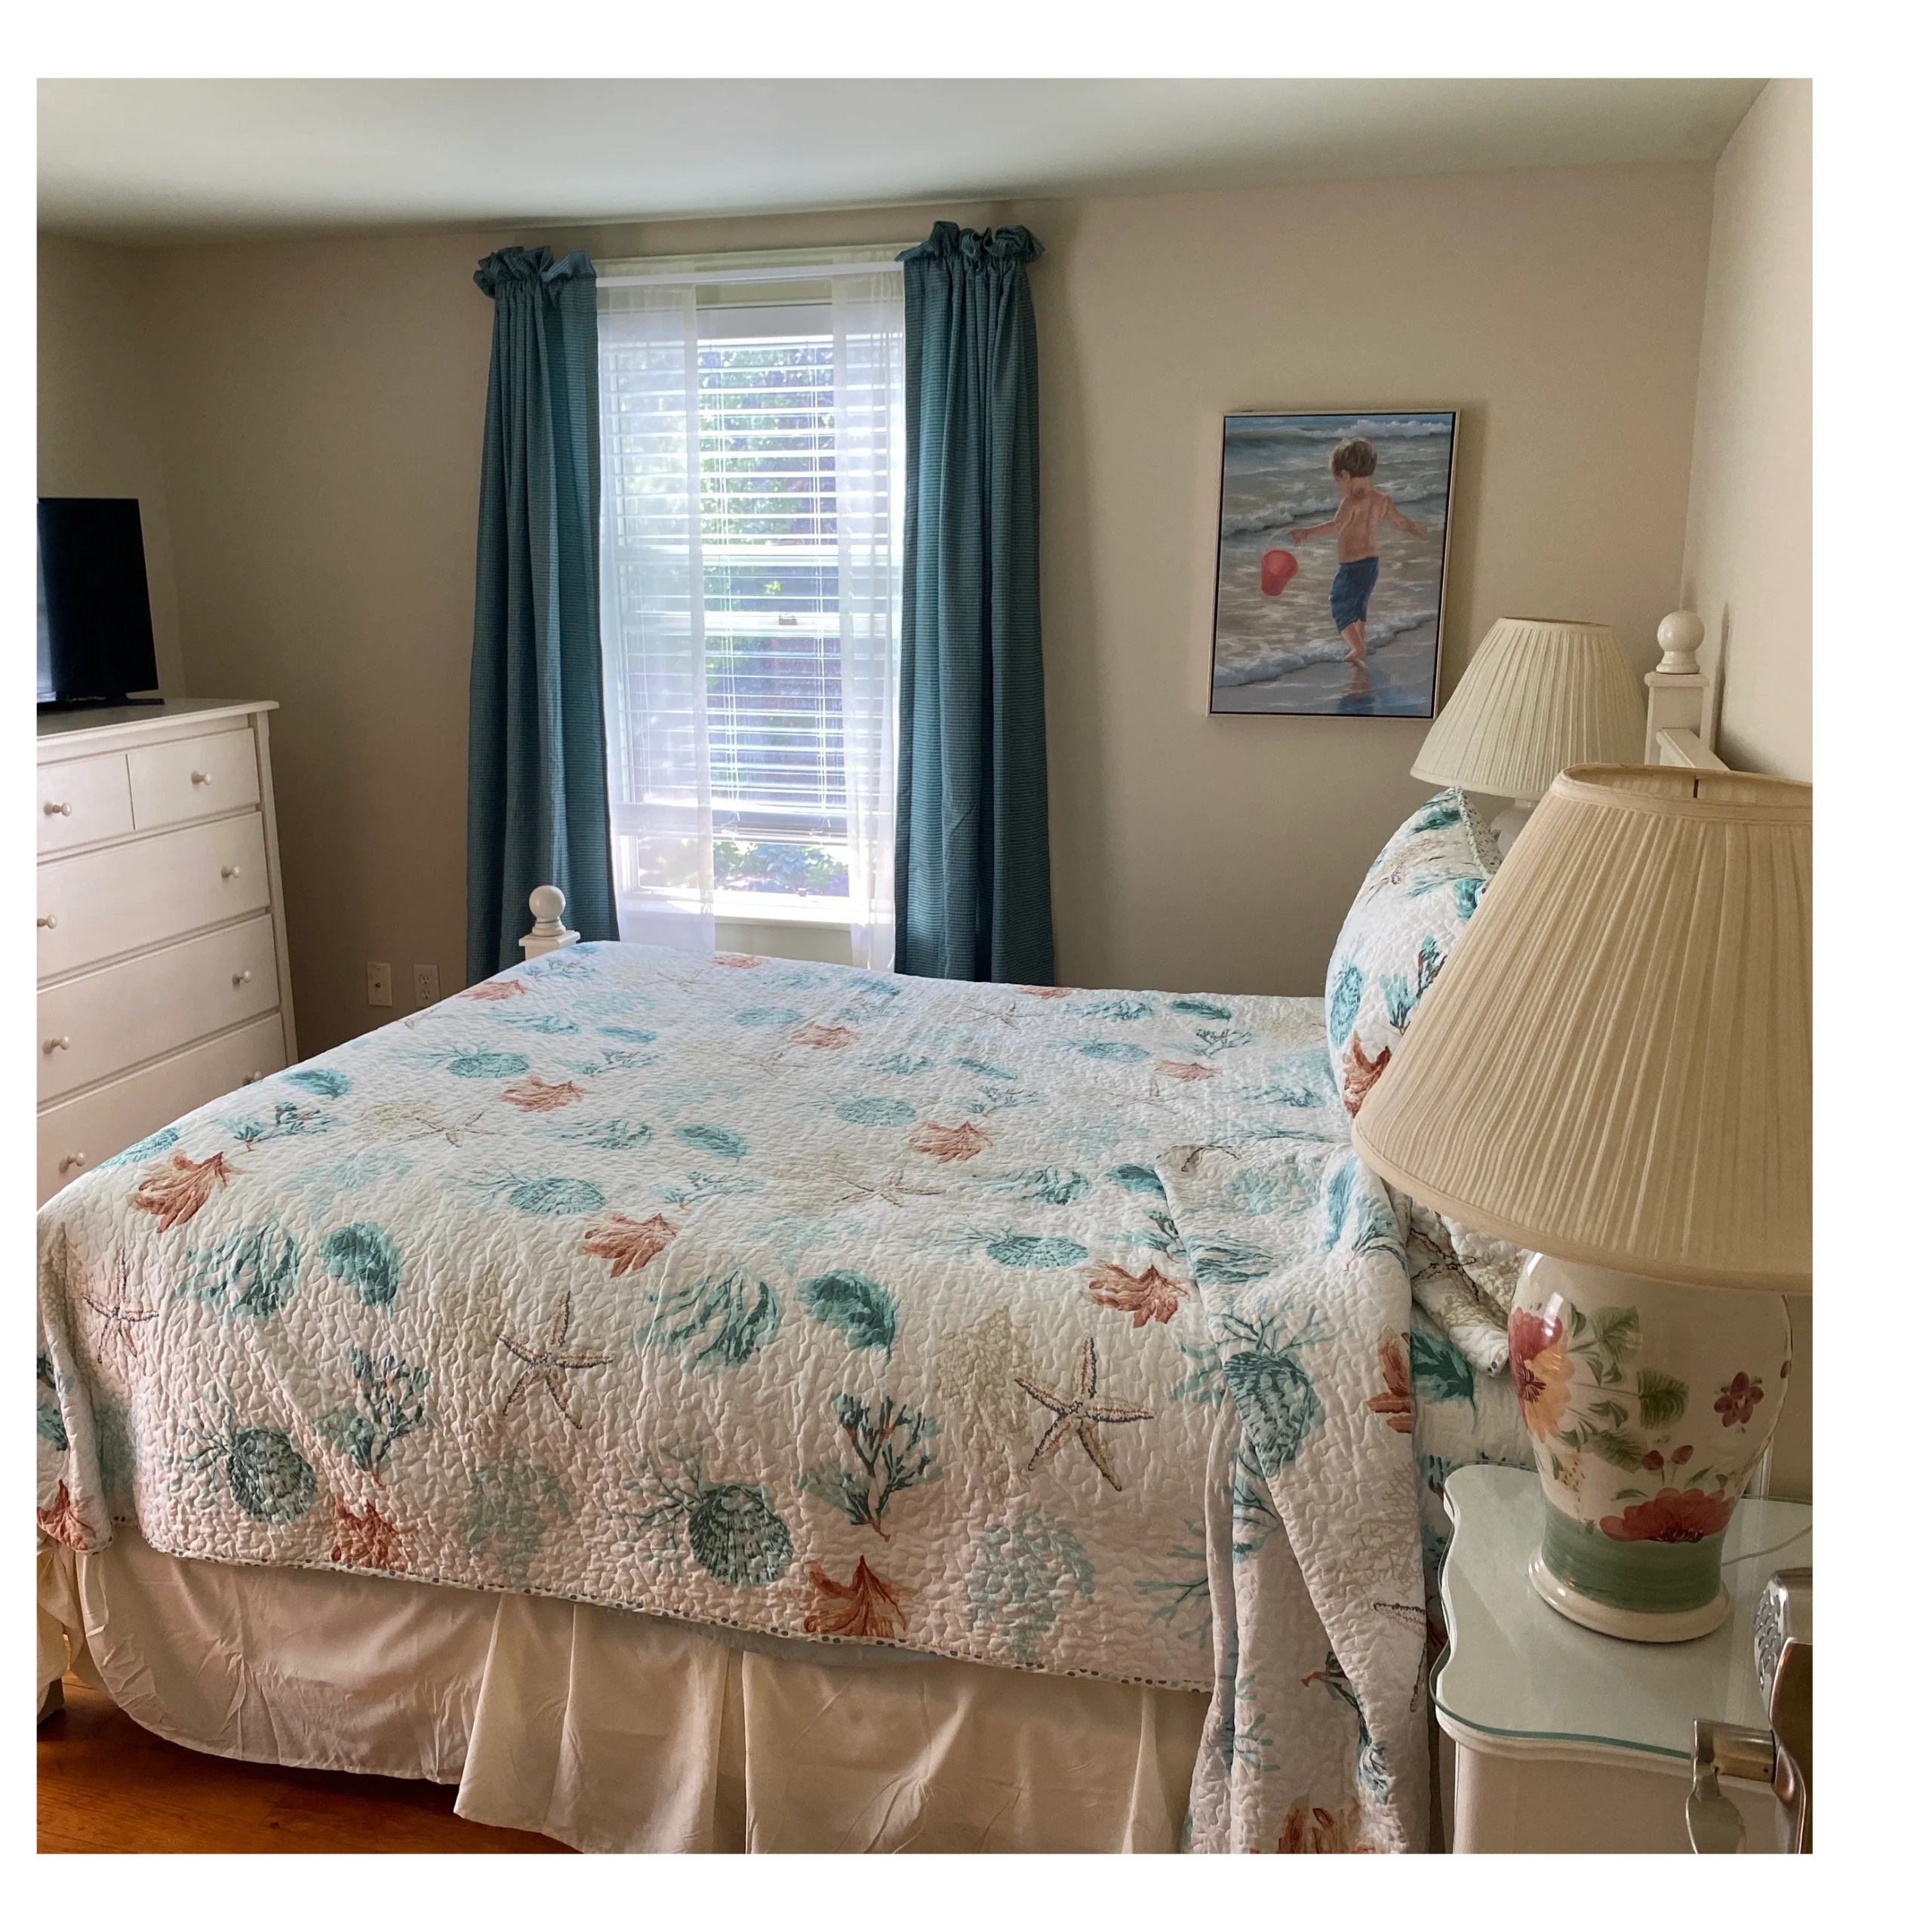 A furnished bedroom